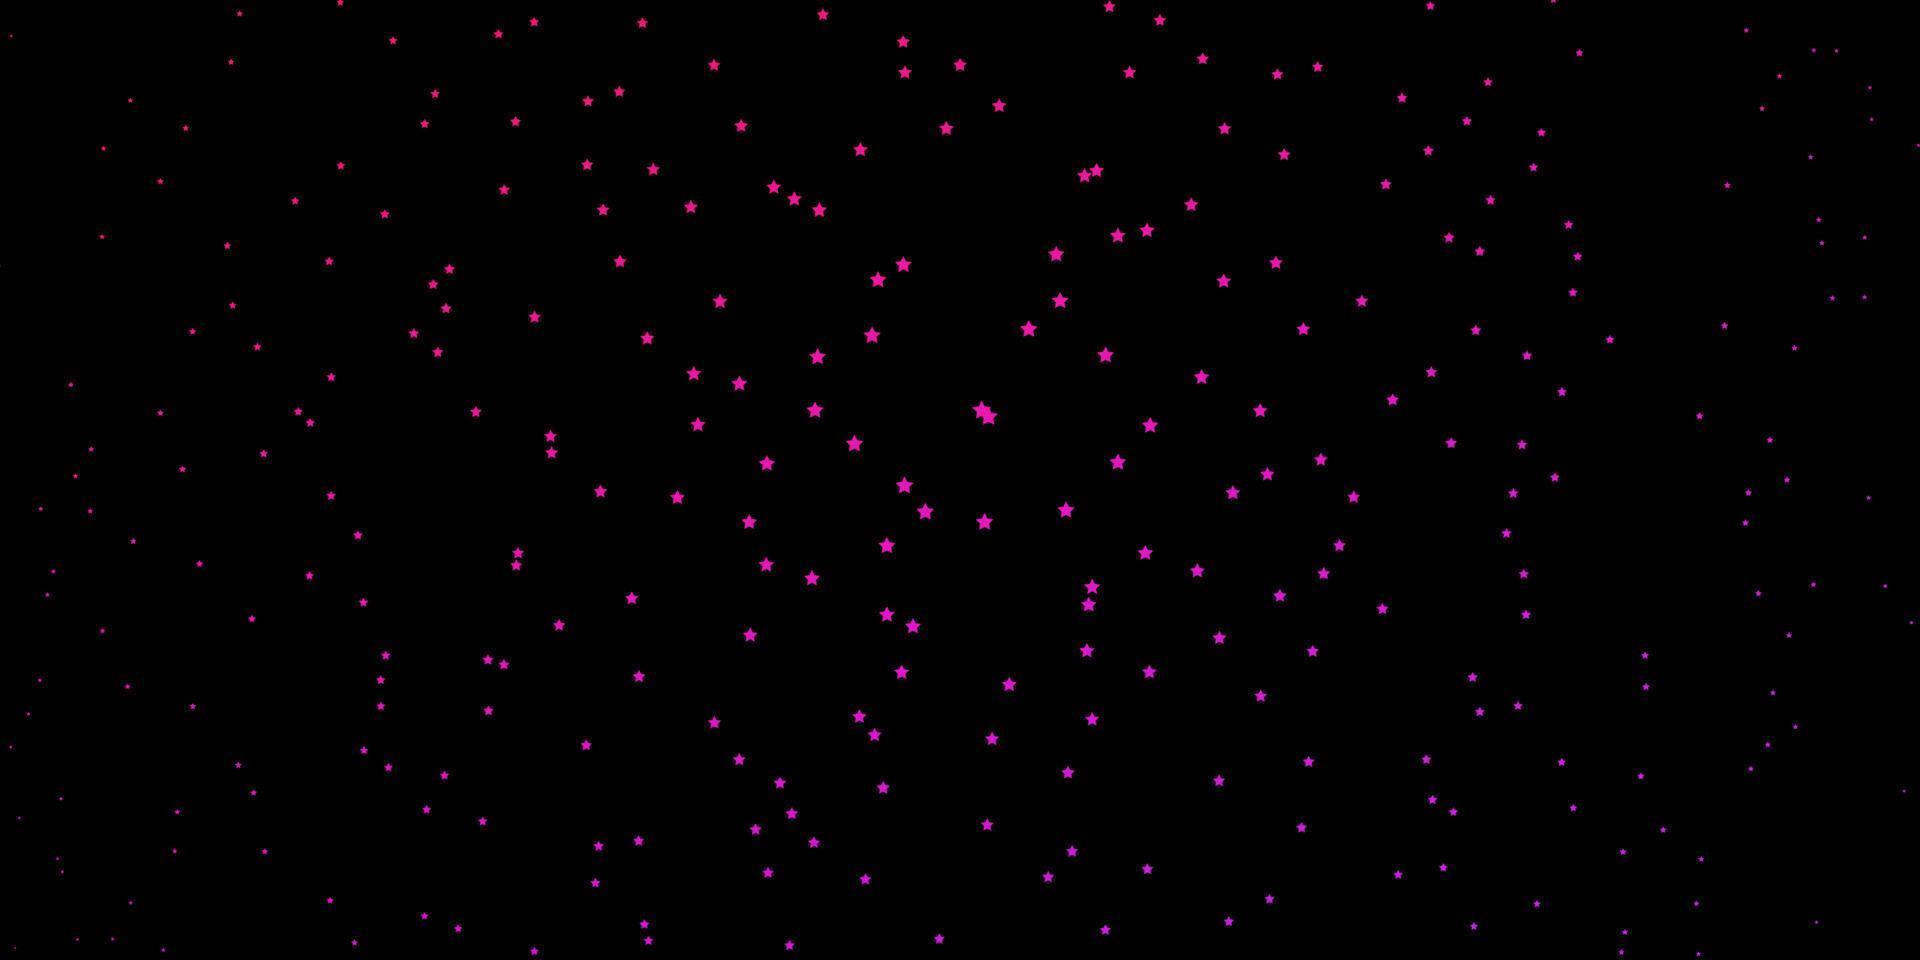 viola scuro, sfondo vettoriale rosa con stelle piccole e grandi.